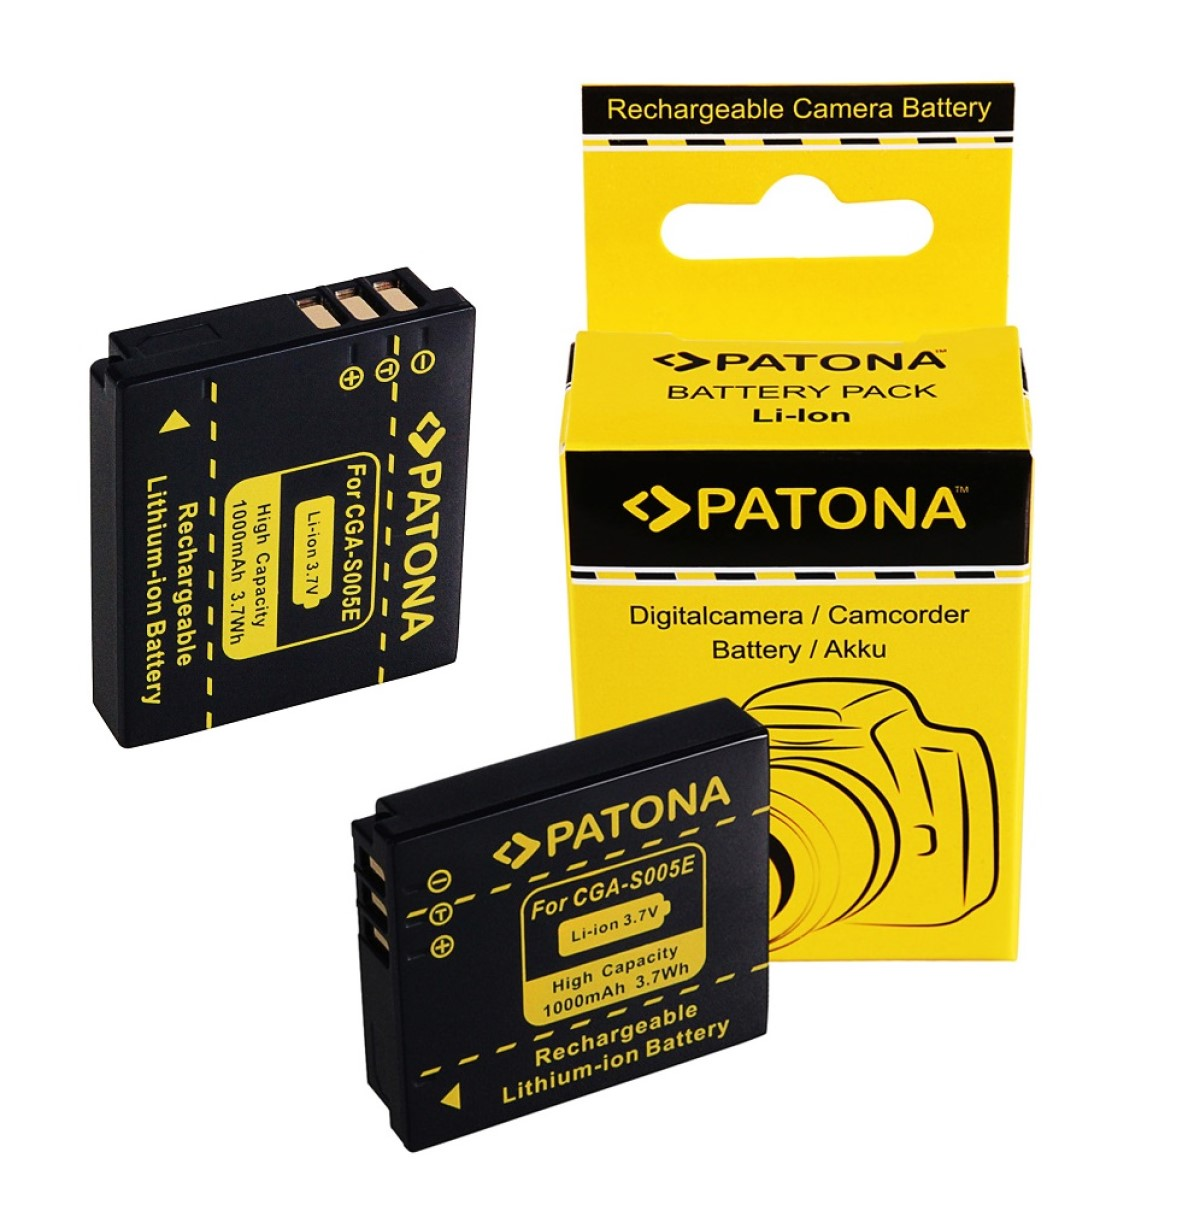 PATONA 2x Akku kompatibel Ersatzakku, DMC-FX3 2 Stück für Lumix 1000mAh Panasonic Li-Ion